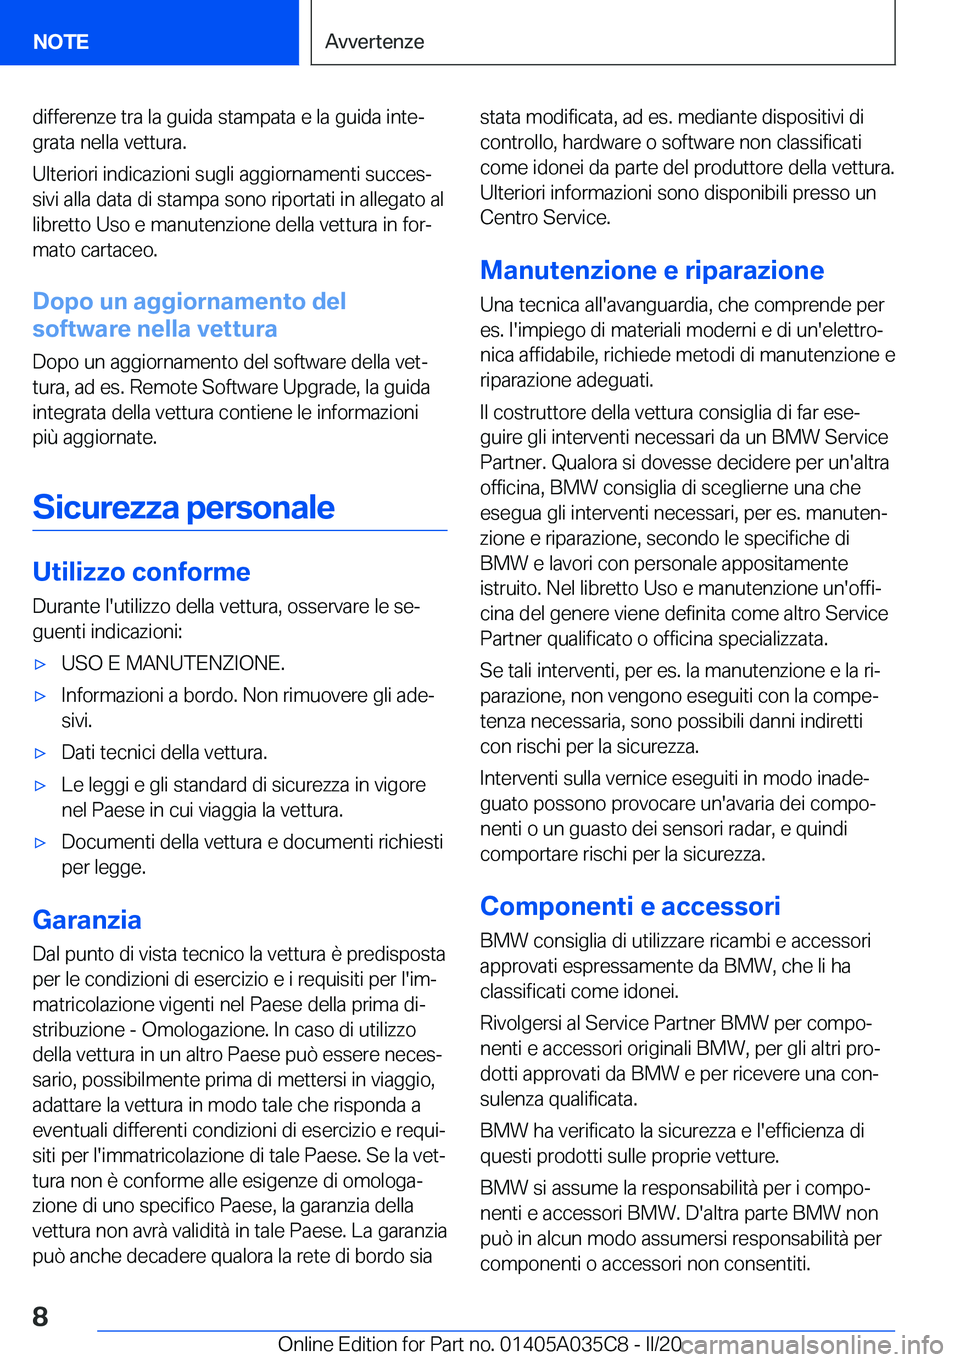 BMW X4 2020  Libretti Di Uso E manutenzione (in Italian) �d�i�f�f�e�r�e�n�z�e��t�r�a��l�a��g�u�i�d�a��s�t�a�m�p�a�t�a��e��l�a��g�u�i�d�a��i�n�t�eª�g�r�a�t�a��n�e�l�l�a��v�e�t�t�u�r�a�.
�U�l�t�e�r�i�o�r�i��i�n�d�i�c�a�z�i�o�n�i��s�u�g�l�i��a�g